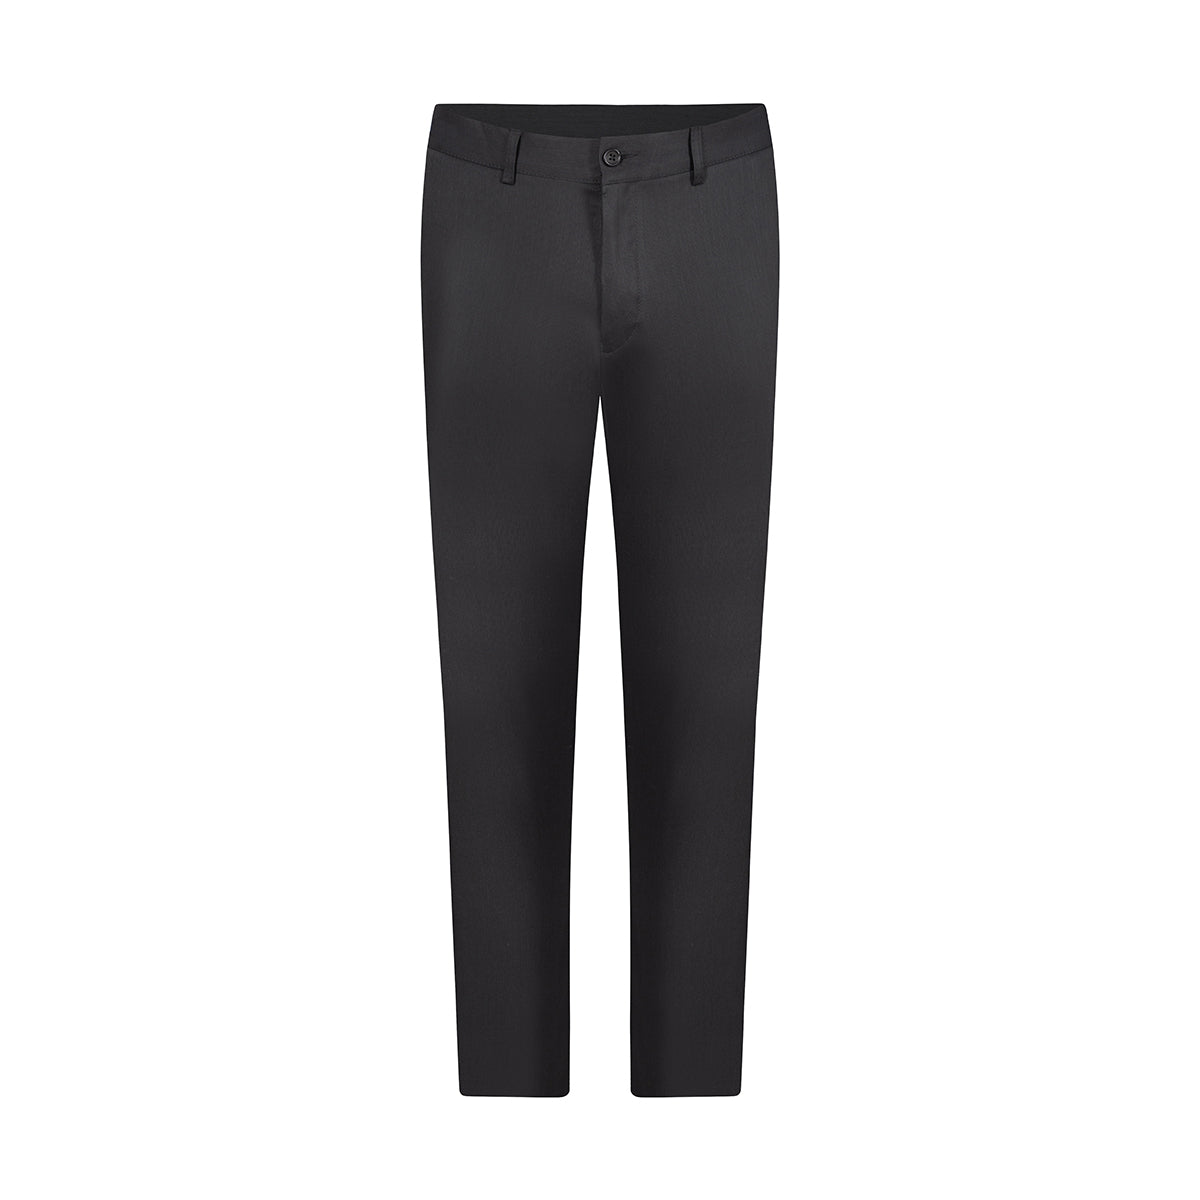 Pantalon sport en color negro de Perry Ellis PS00157031